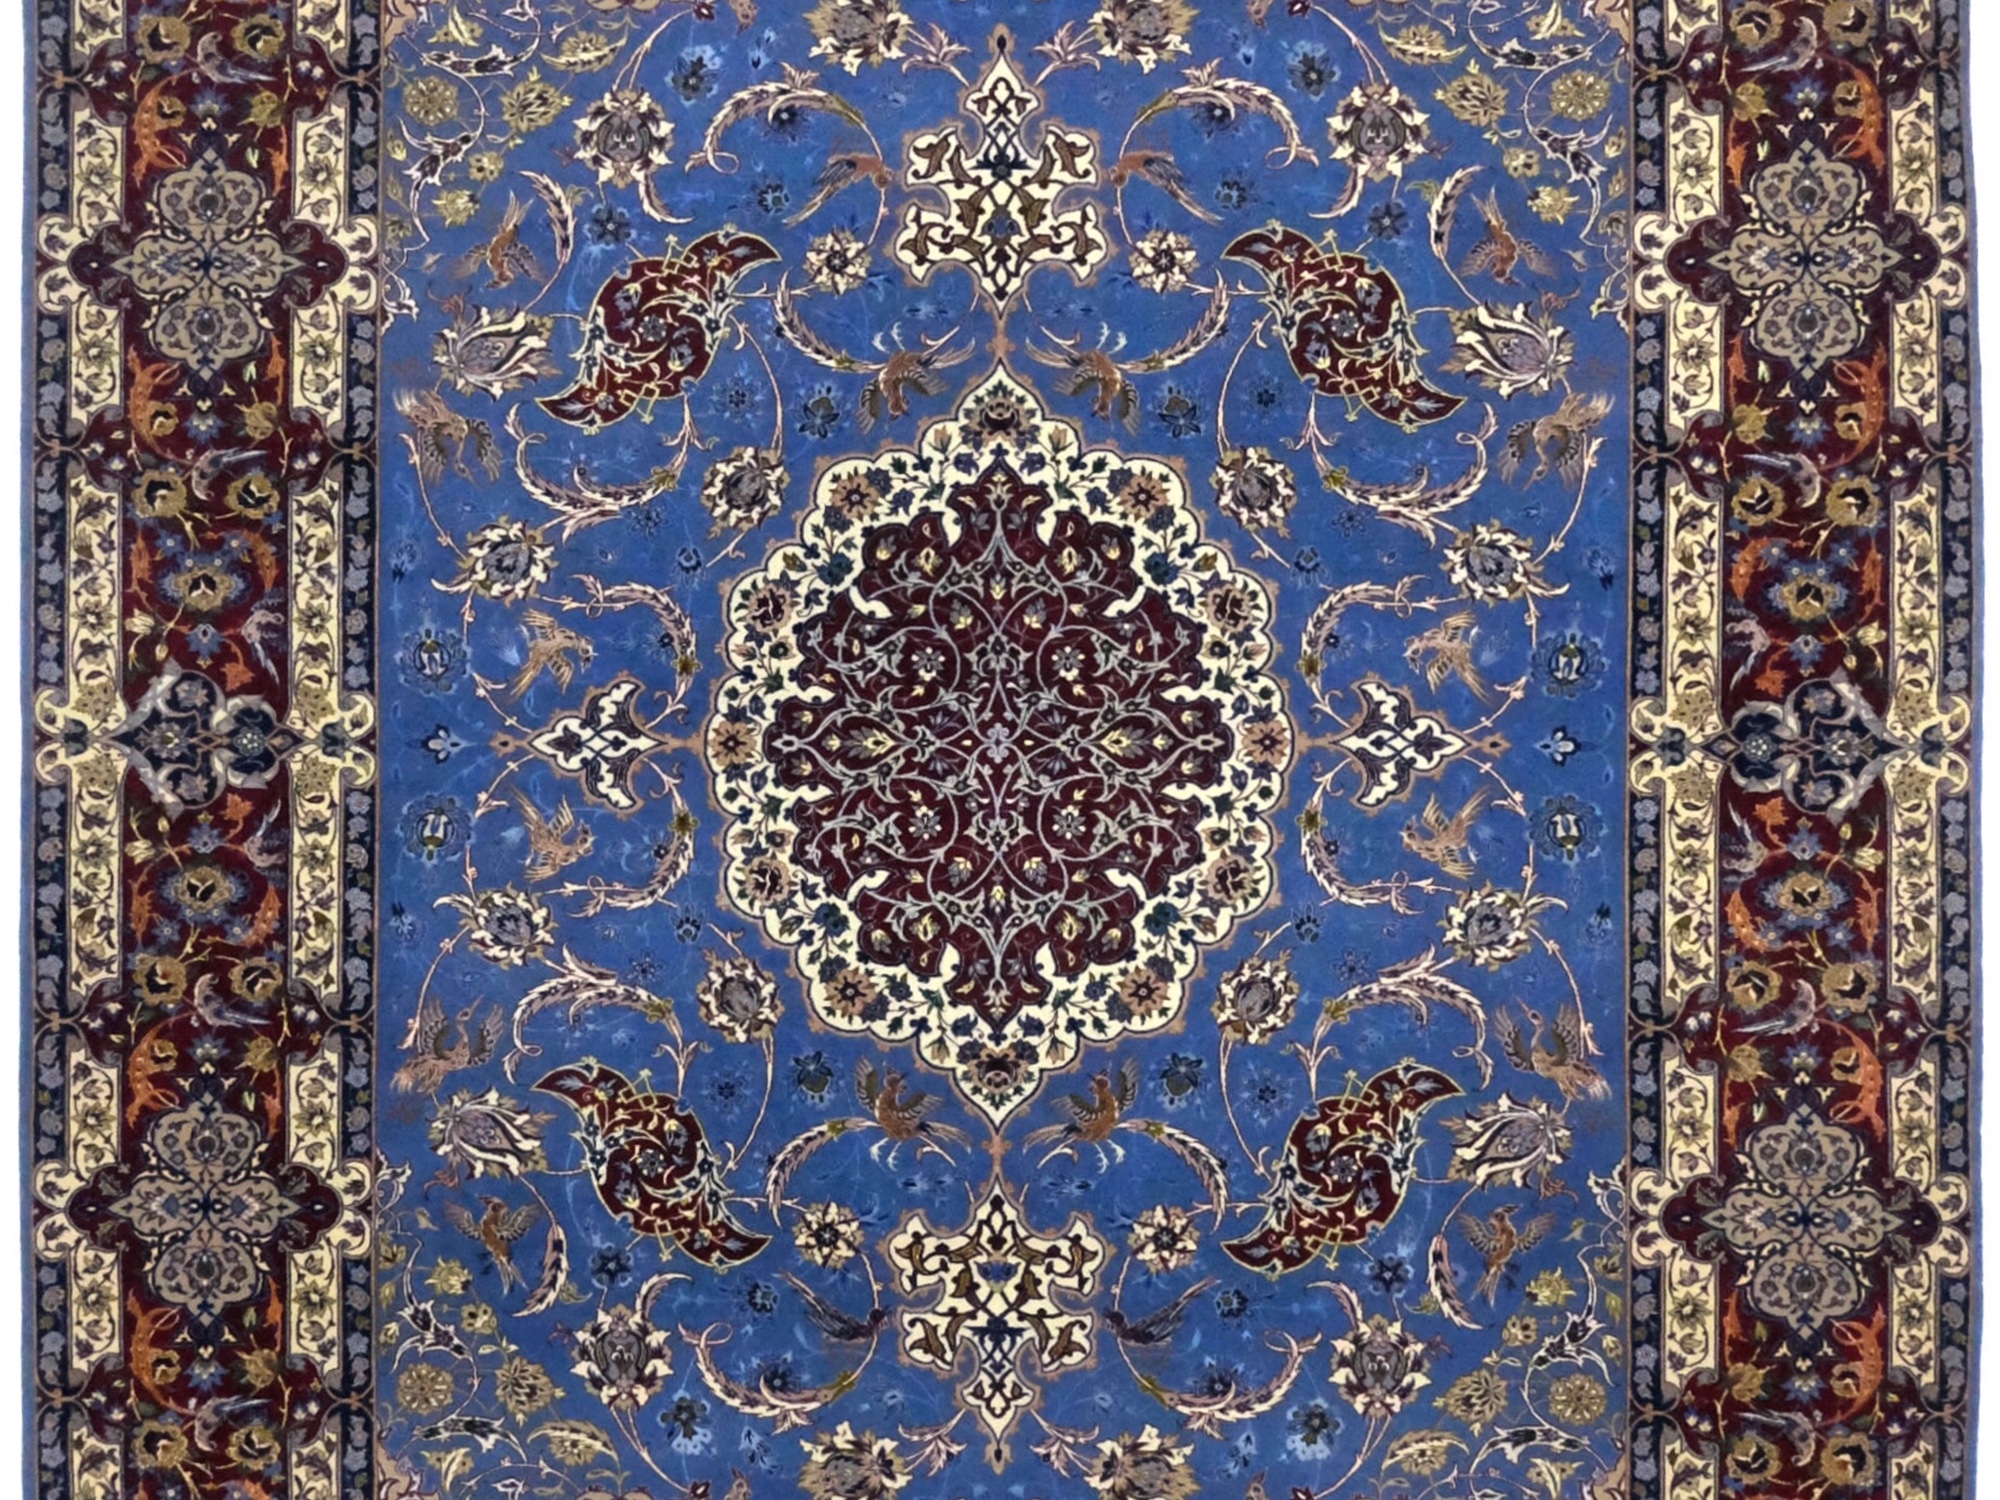 ペルシャ絨毯 ウール絨毯 イスファハン縦糸はシルクで柔らかい絨毯です 